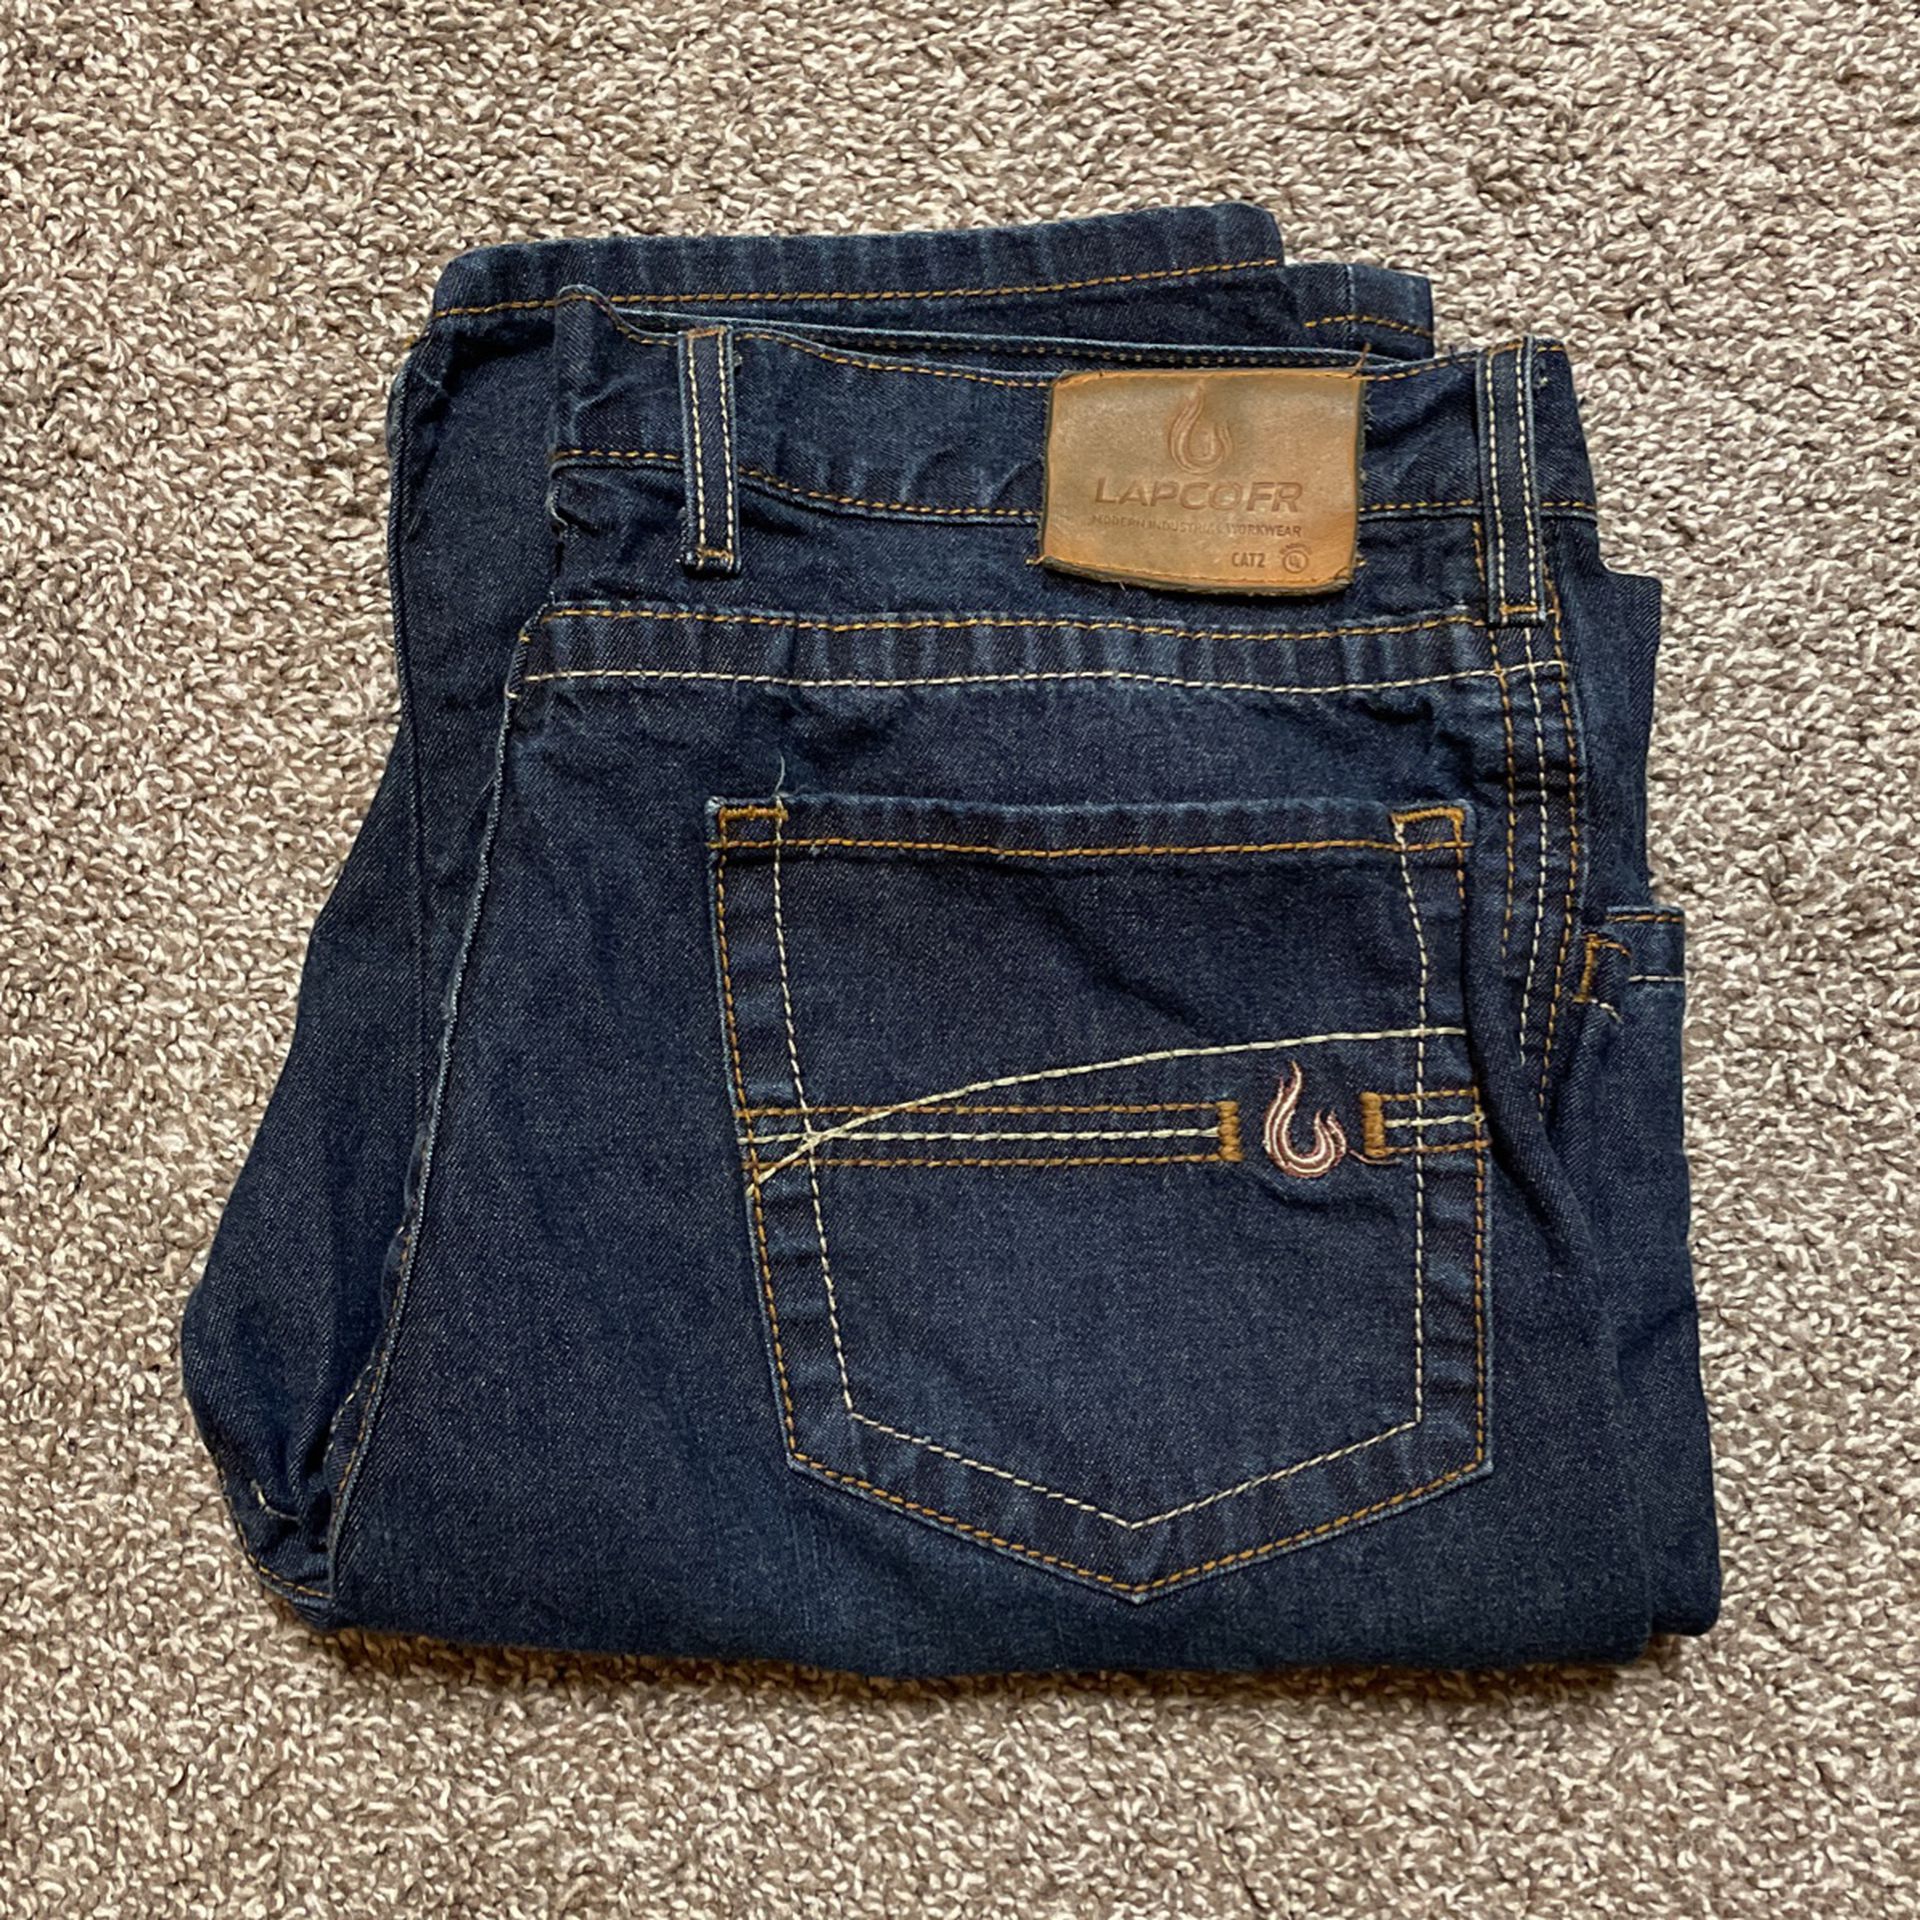 Fire 🔥 Resistant Jeans - Lapco 38x32